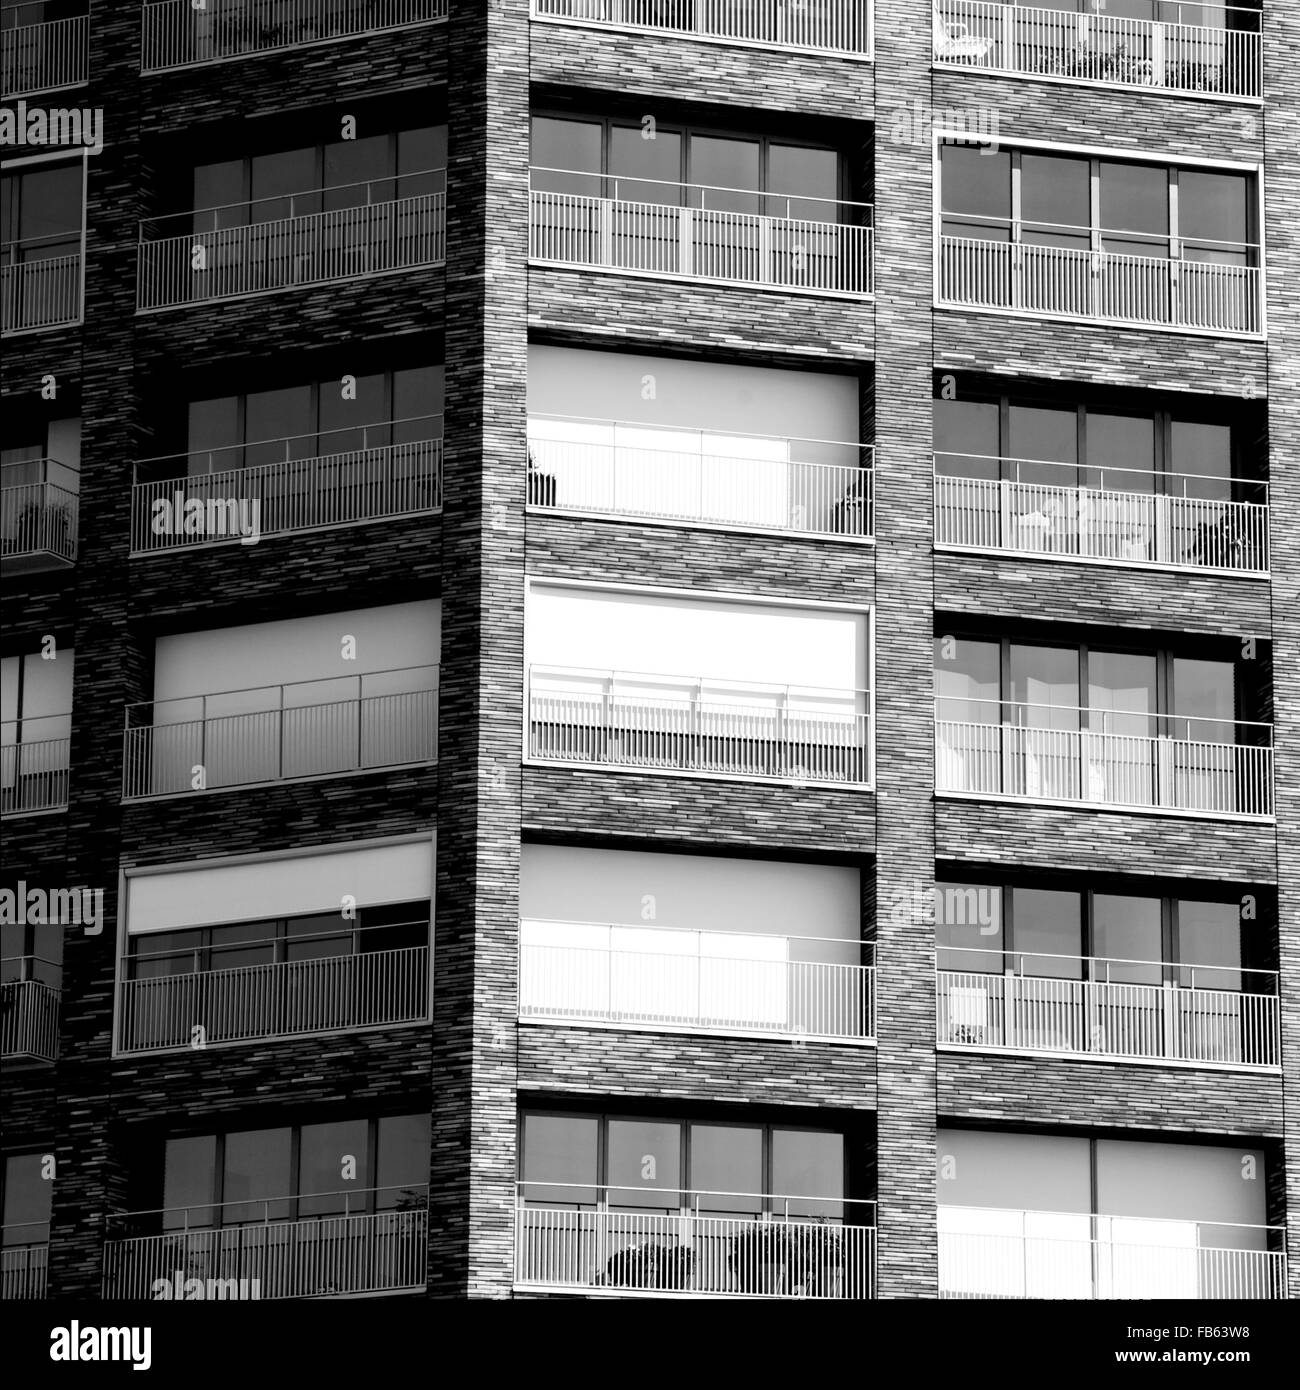 Façade de l'architecture d'un bâtiment en brique blanche et noire Banque D'Images